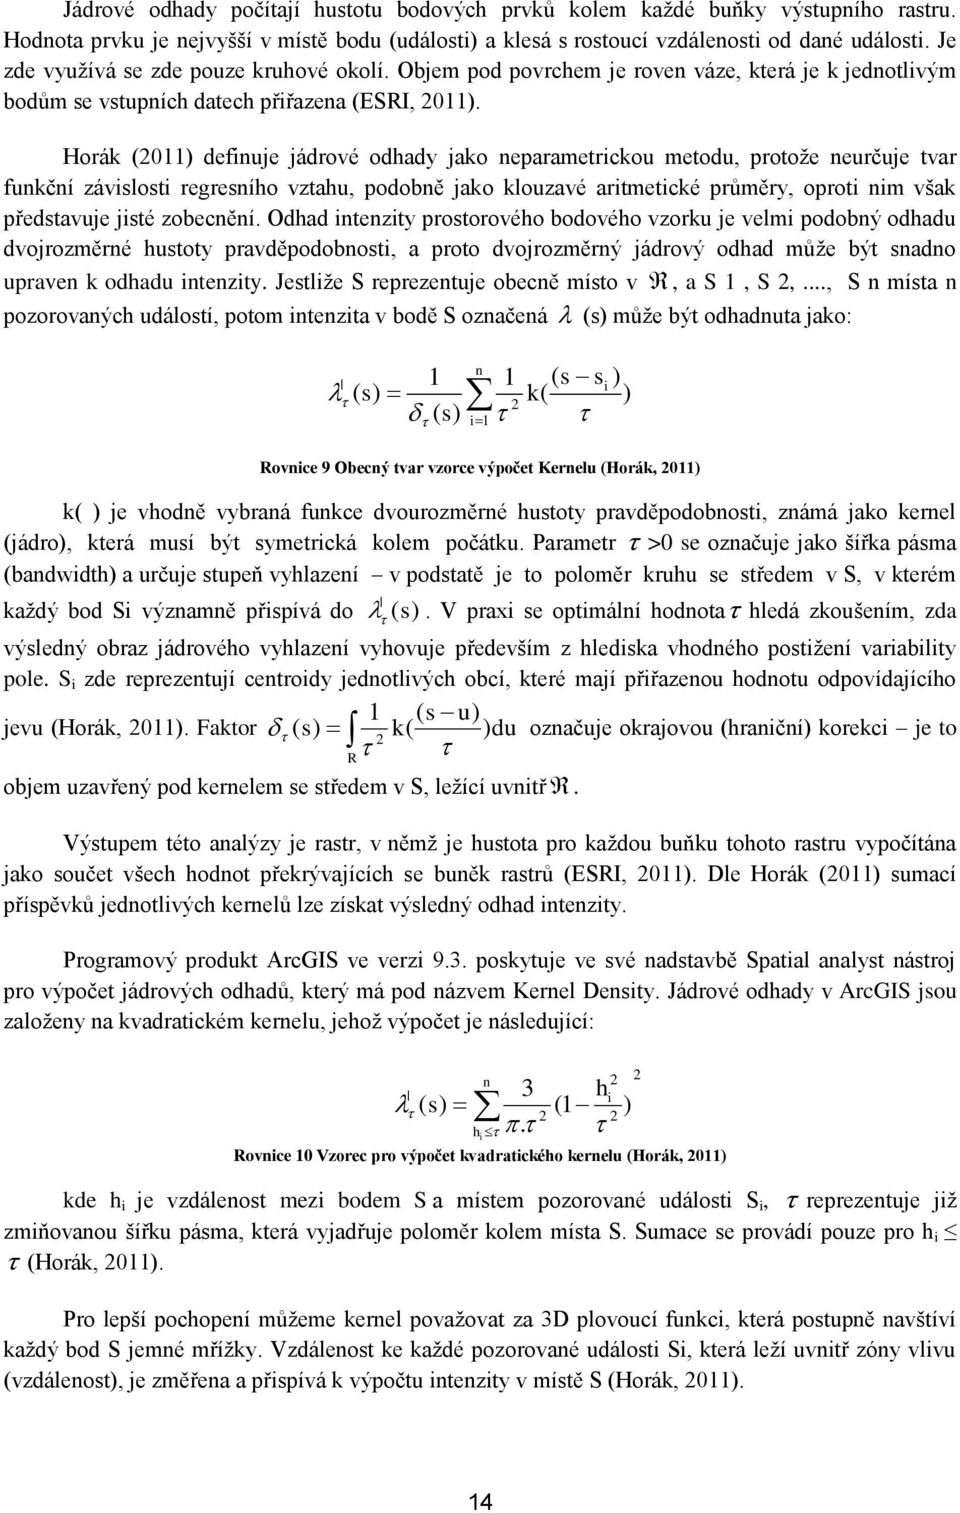 Horák (2011) defiuje jádrové odhady jako eparametrickou metodu, protoţe eurčuje tvar fukčí závislosti regresího vztahu, podobě jako klouzavé aritmetické průměry, oproti im však představuje jisté